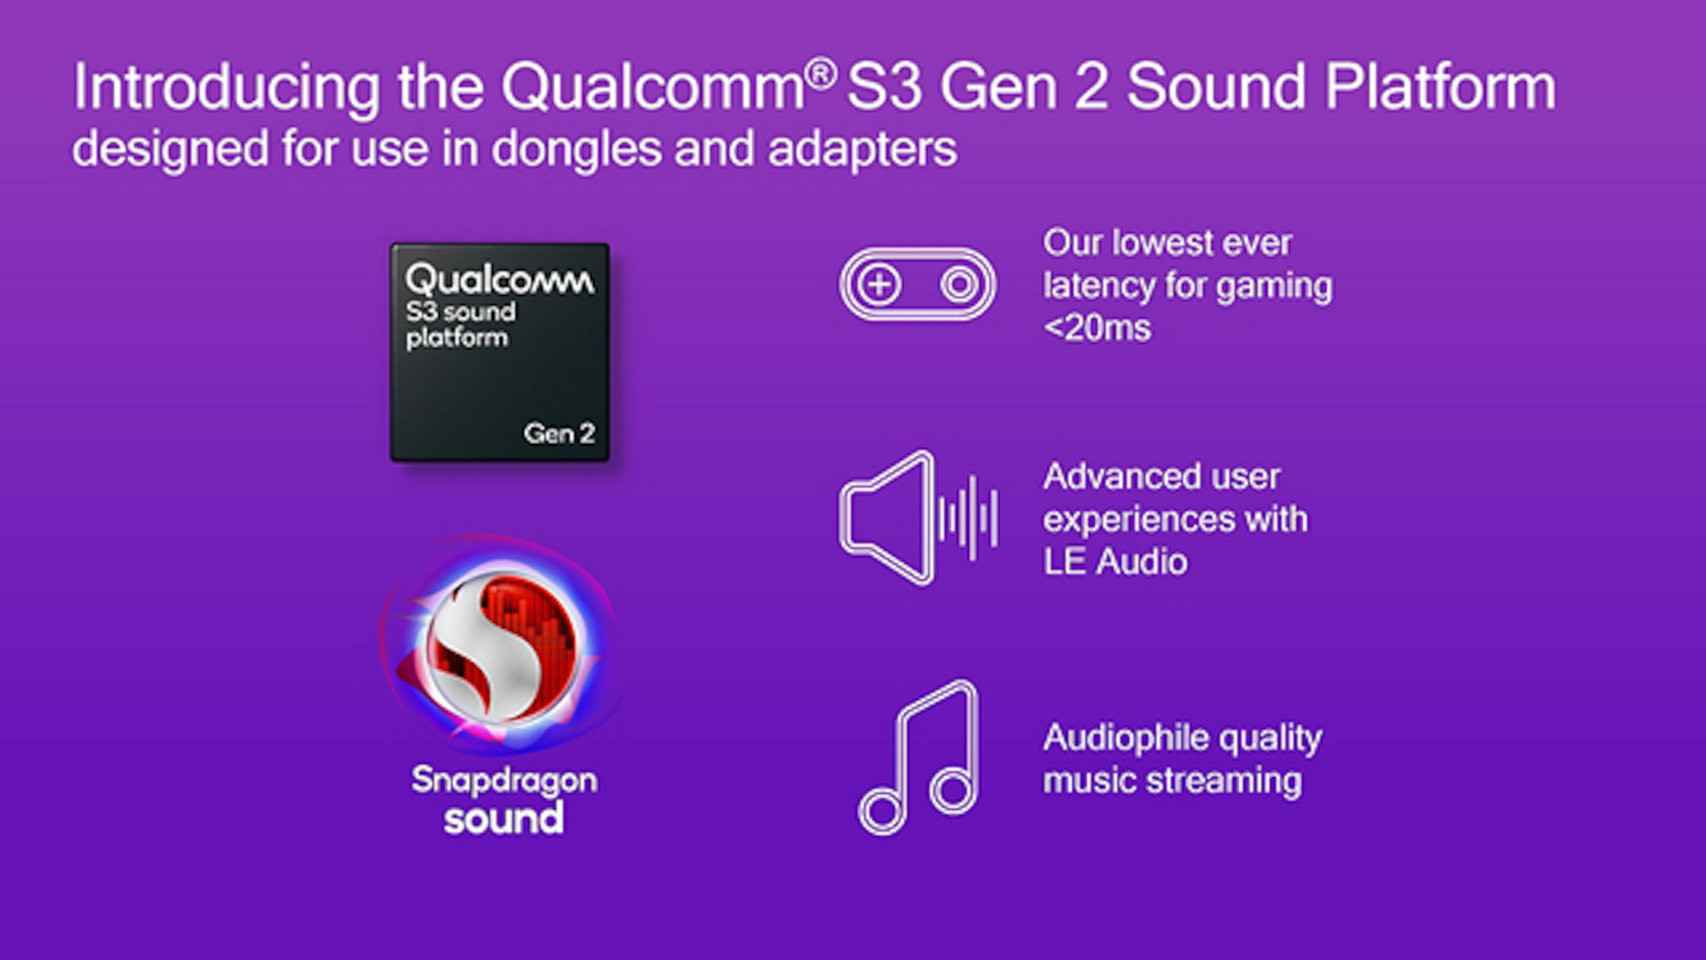 The new Snapdragon S3 Gen 2 platform